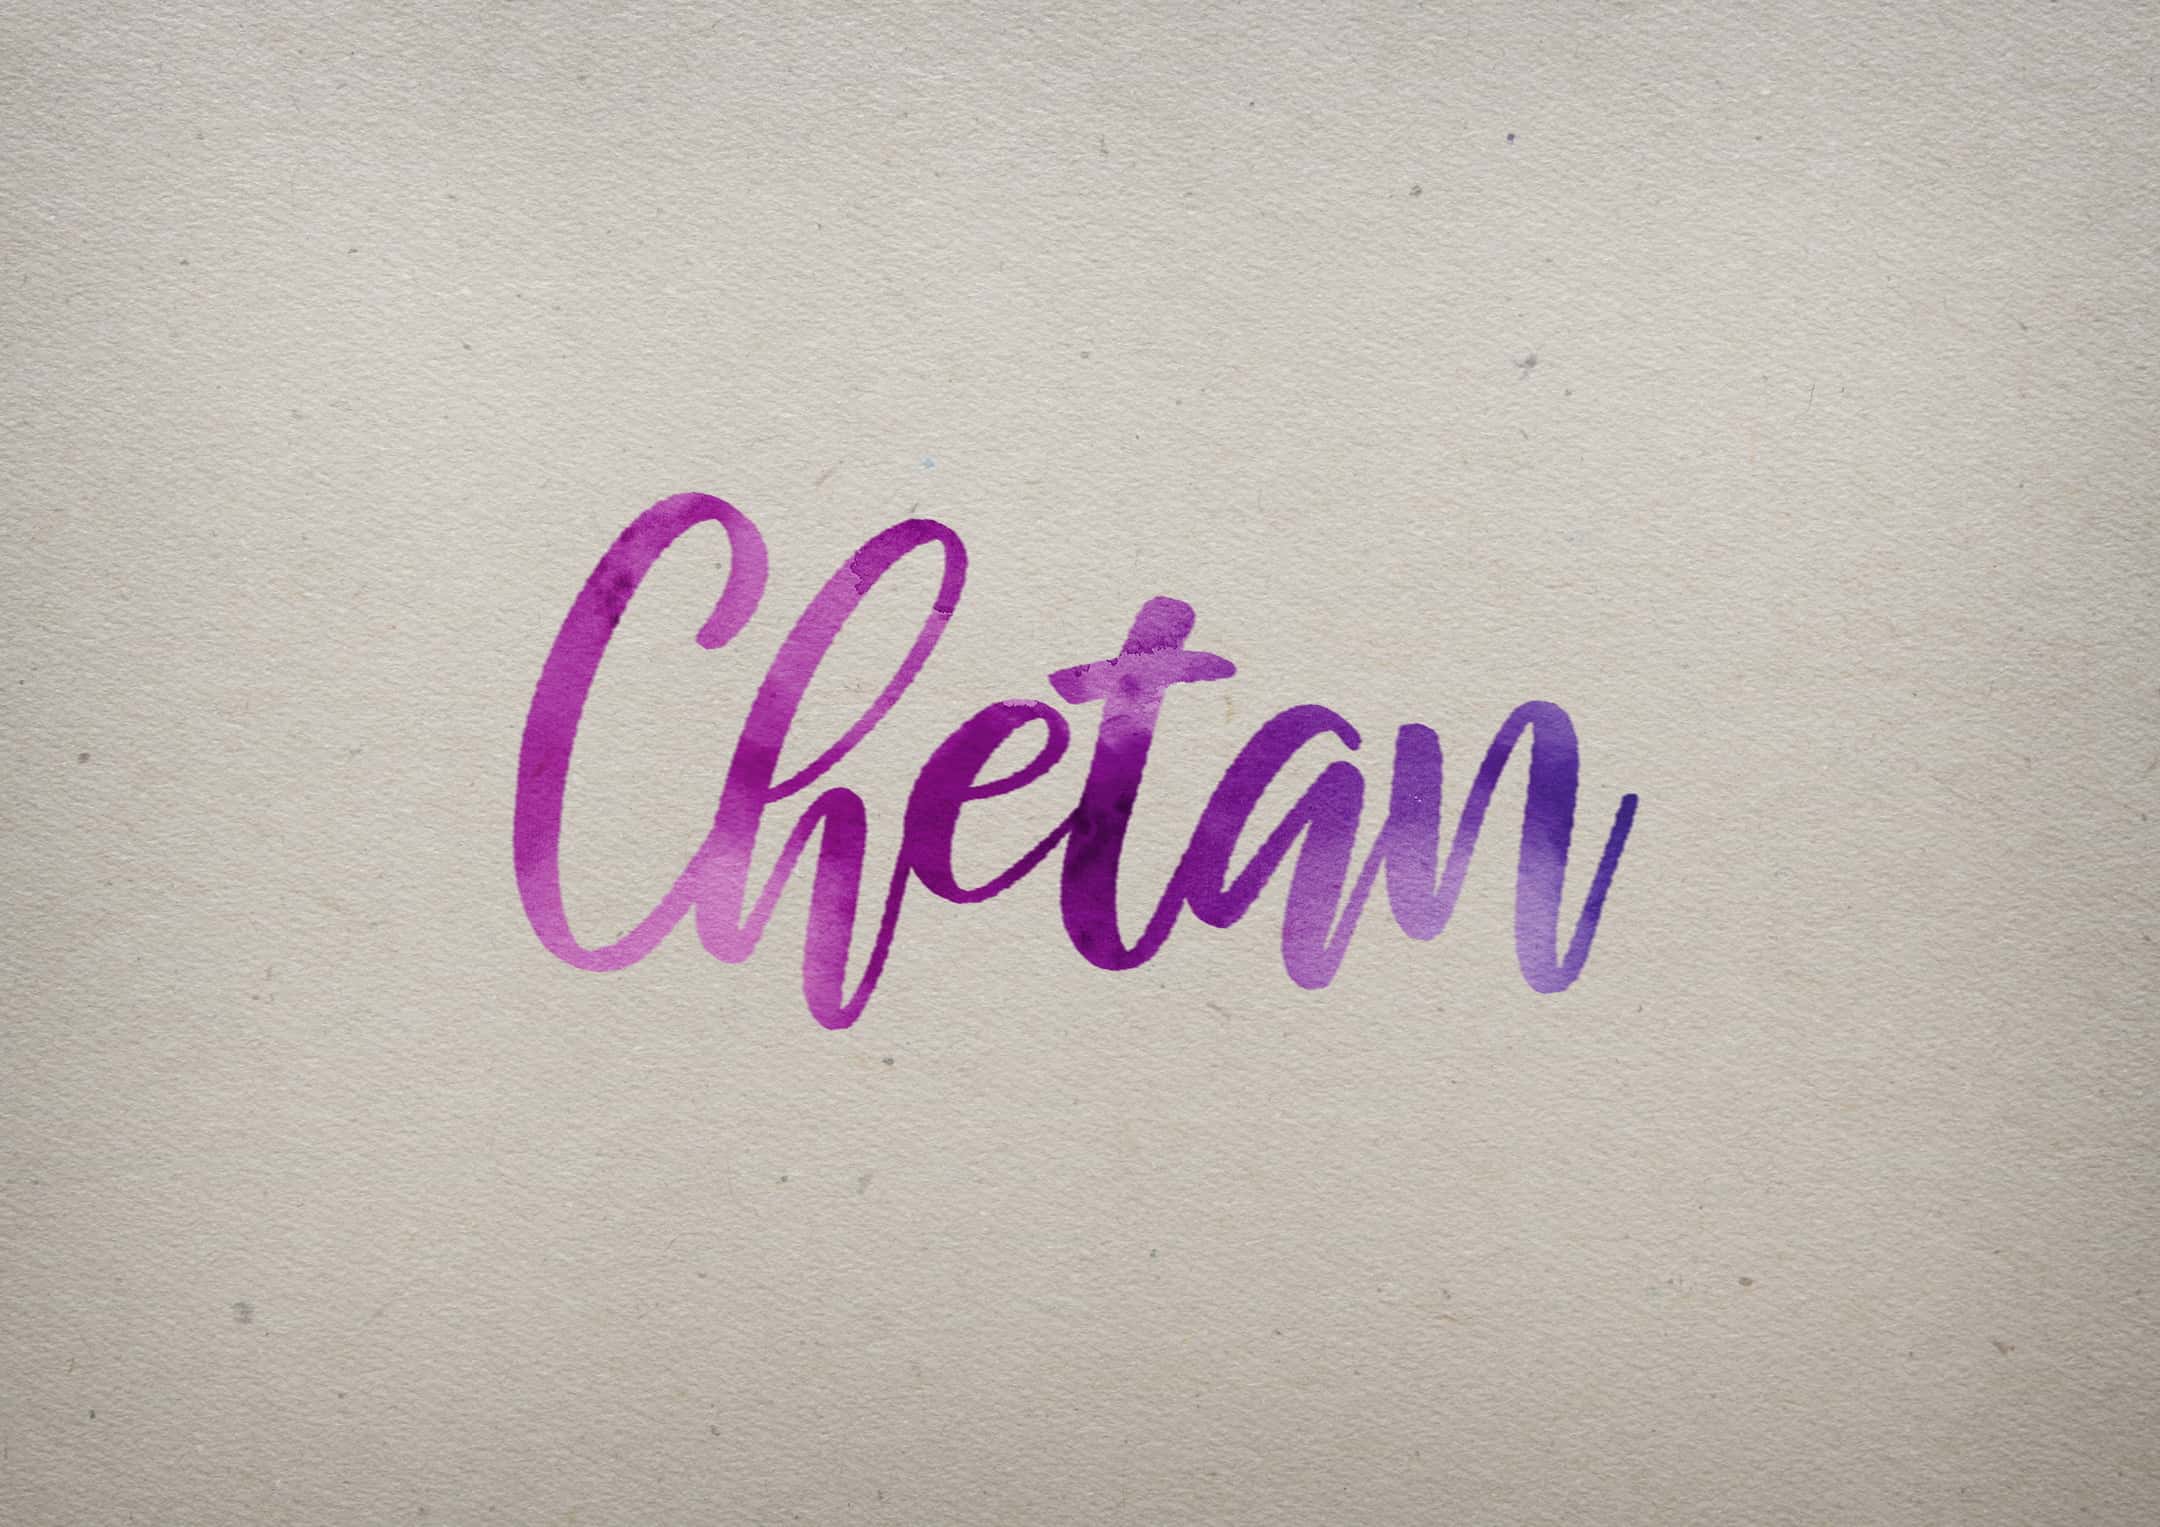 Chetan Gaming YT